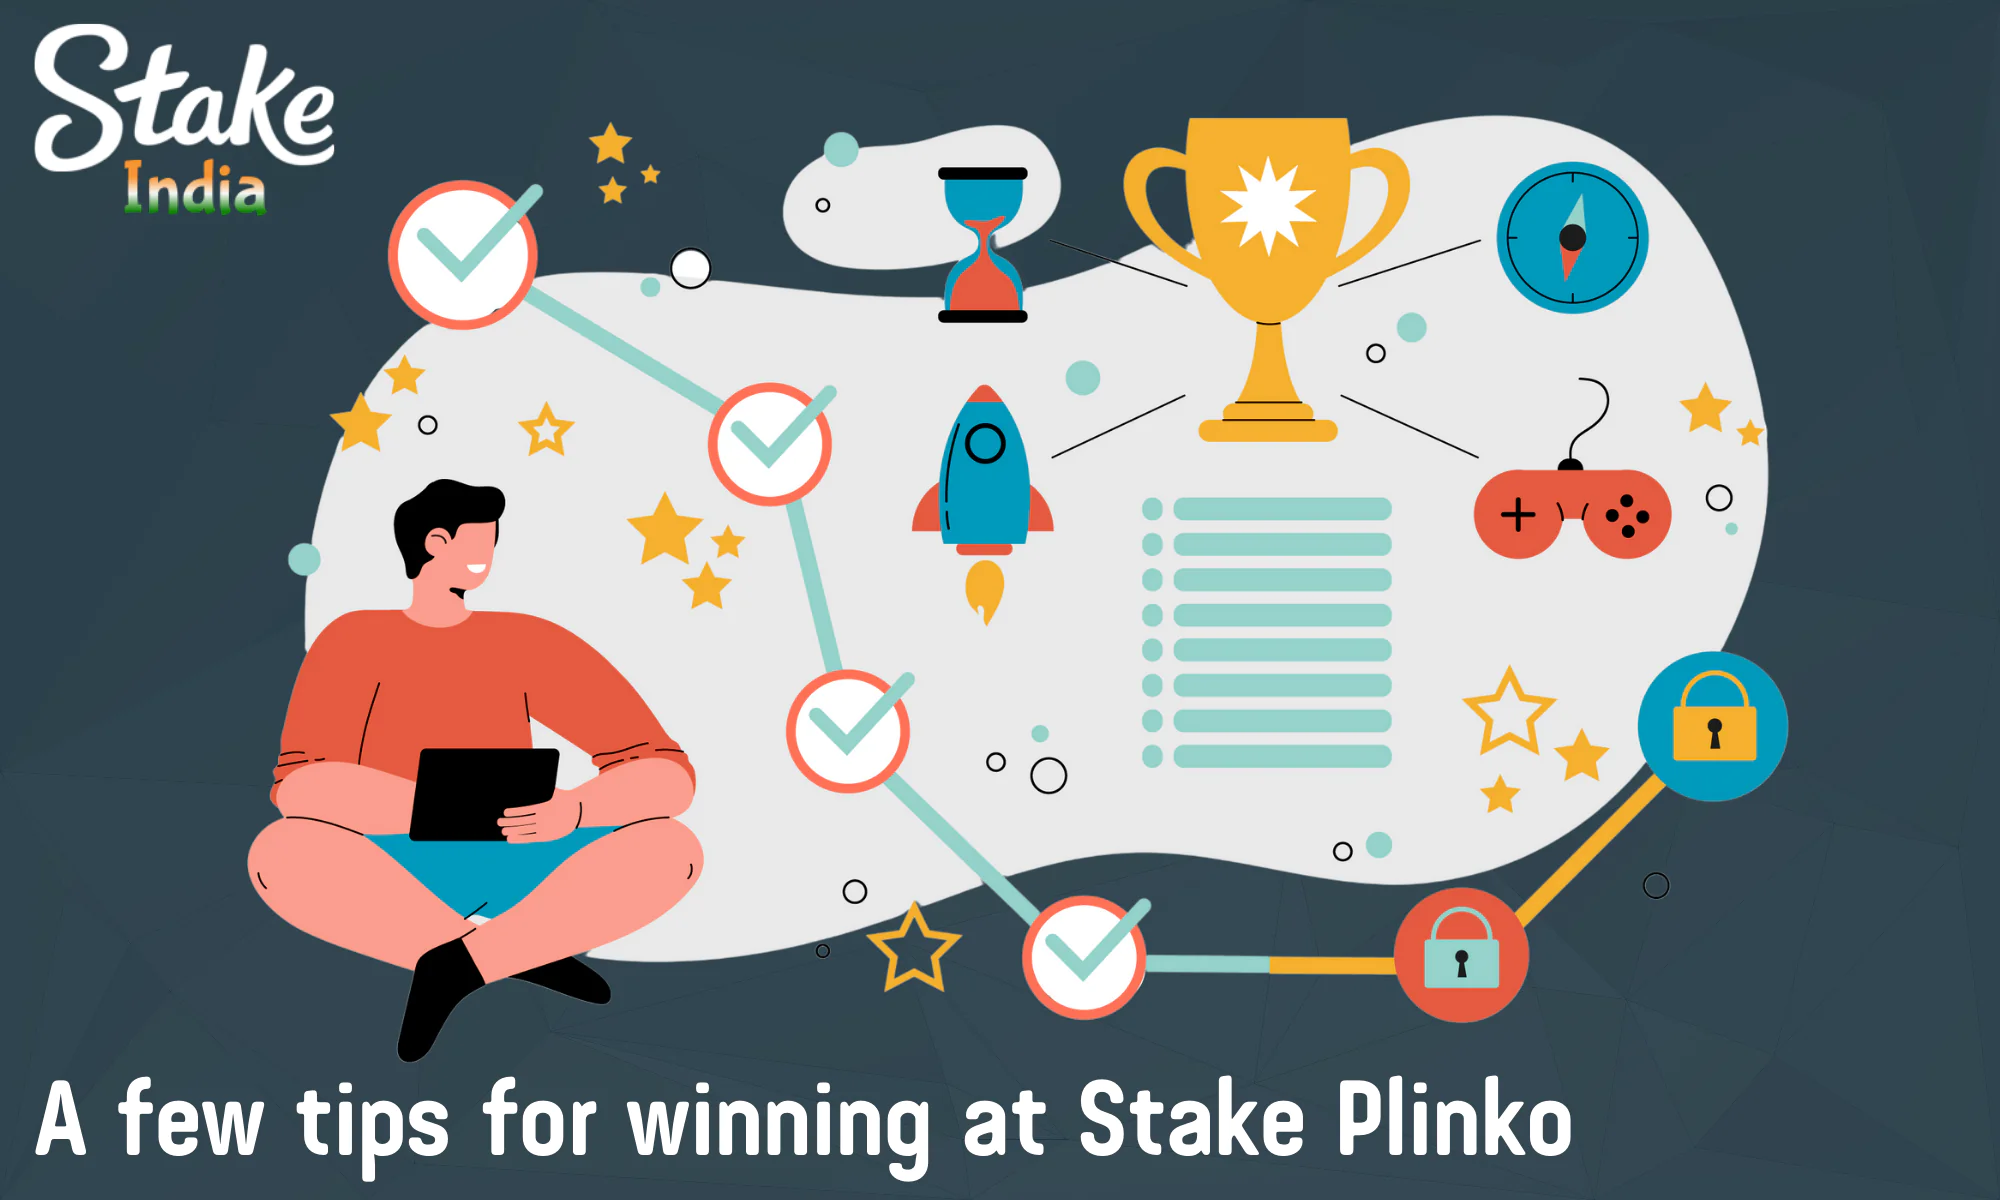 Tips to make playing Stake Plinko easier